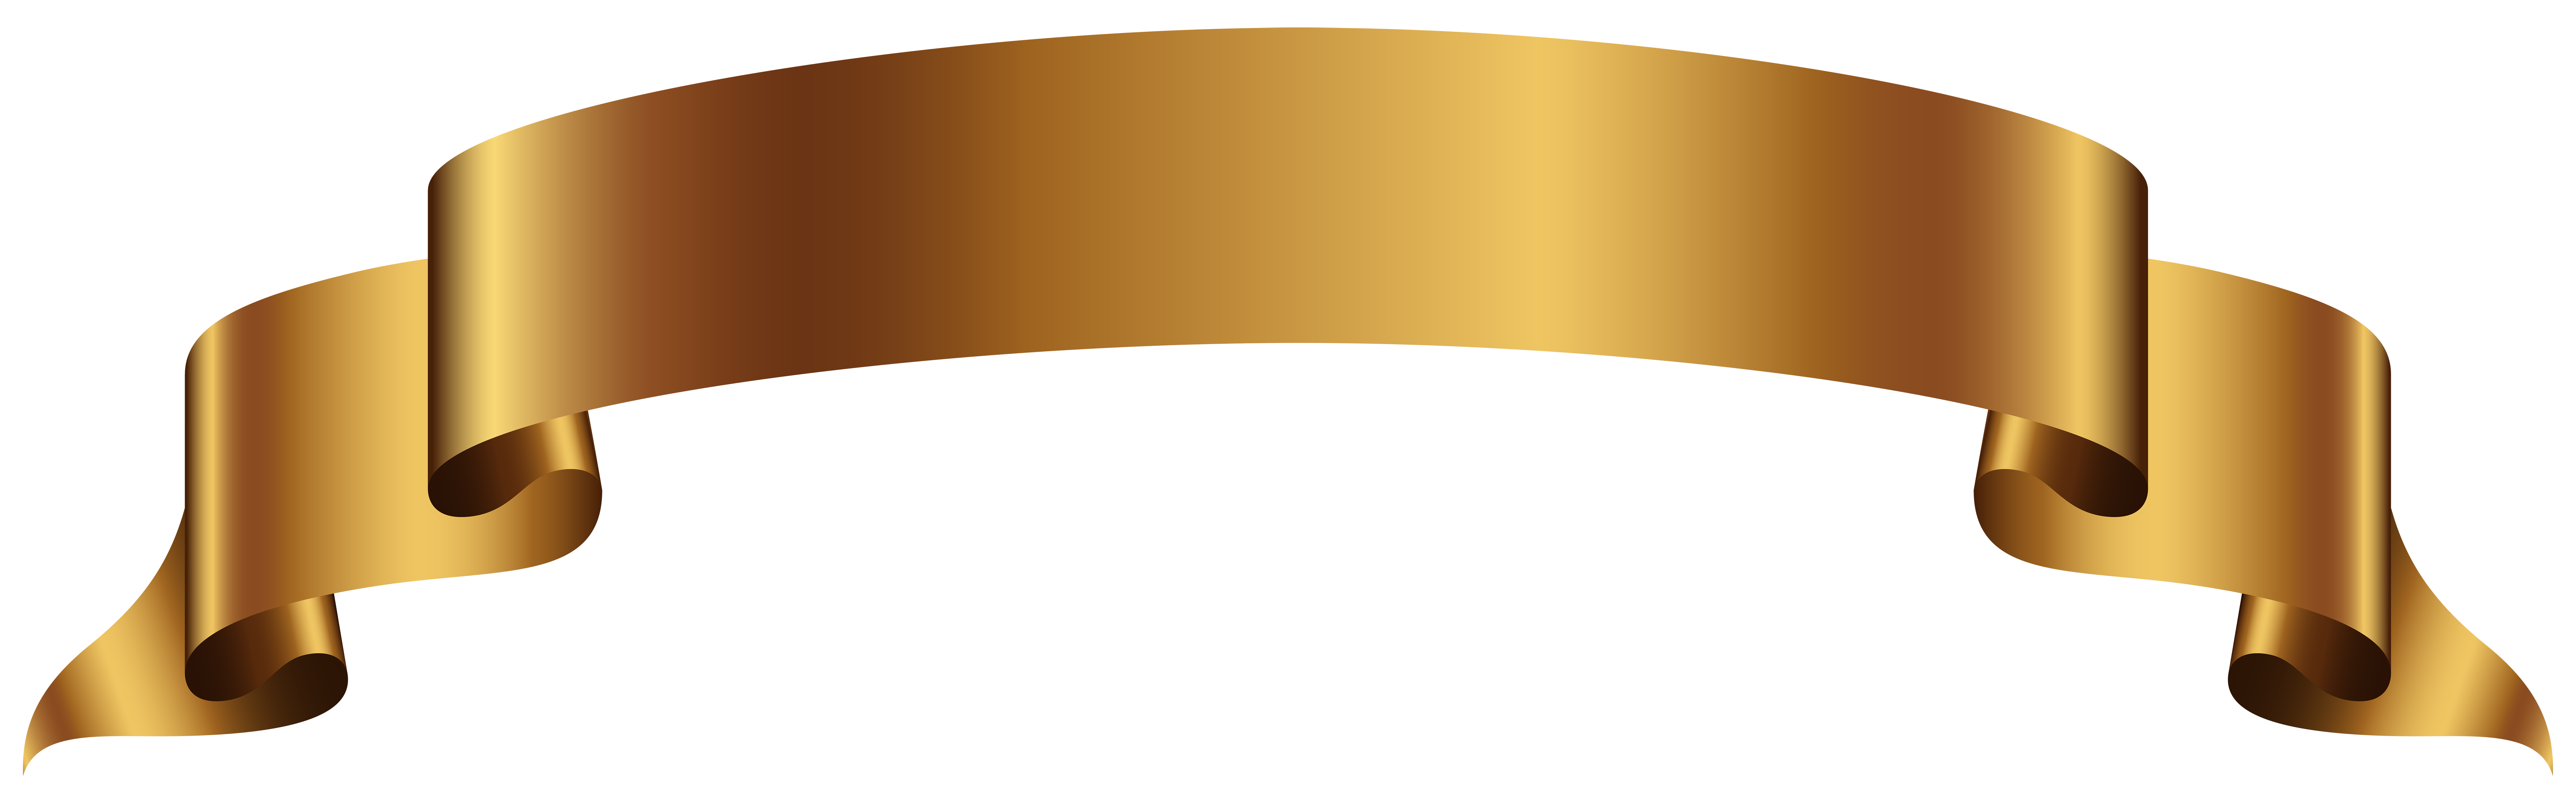 Gold Banner Transparent PNG Clip Art Image 